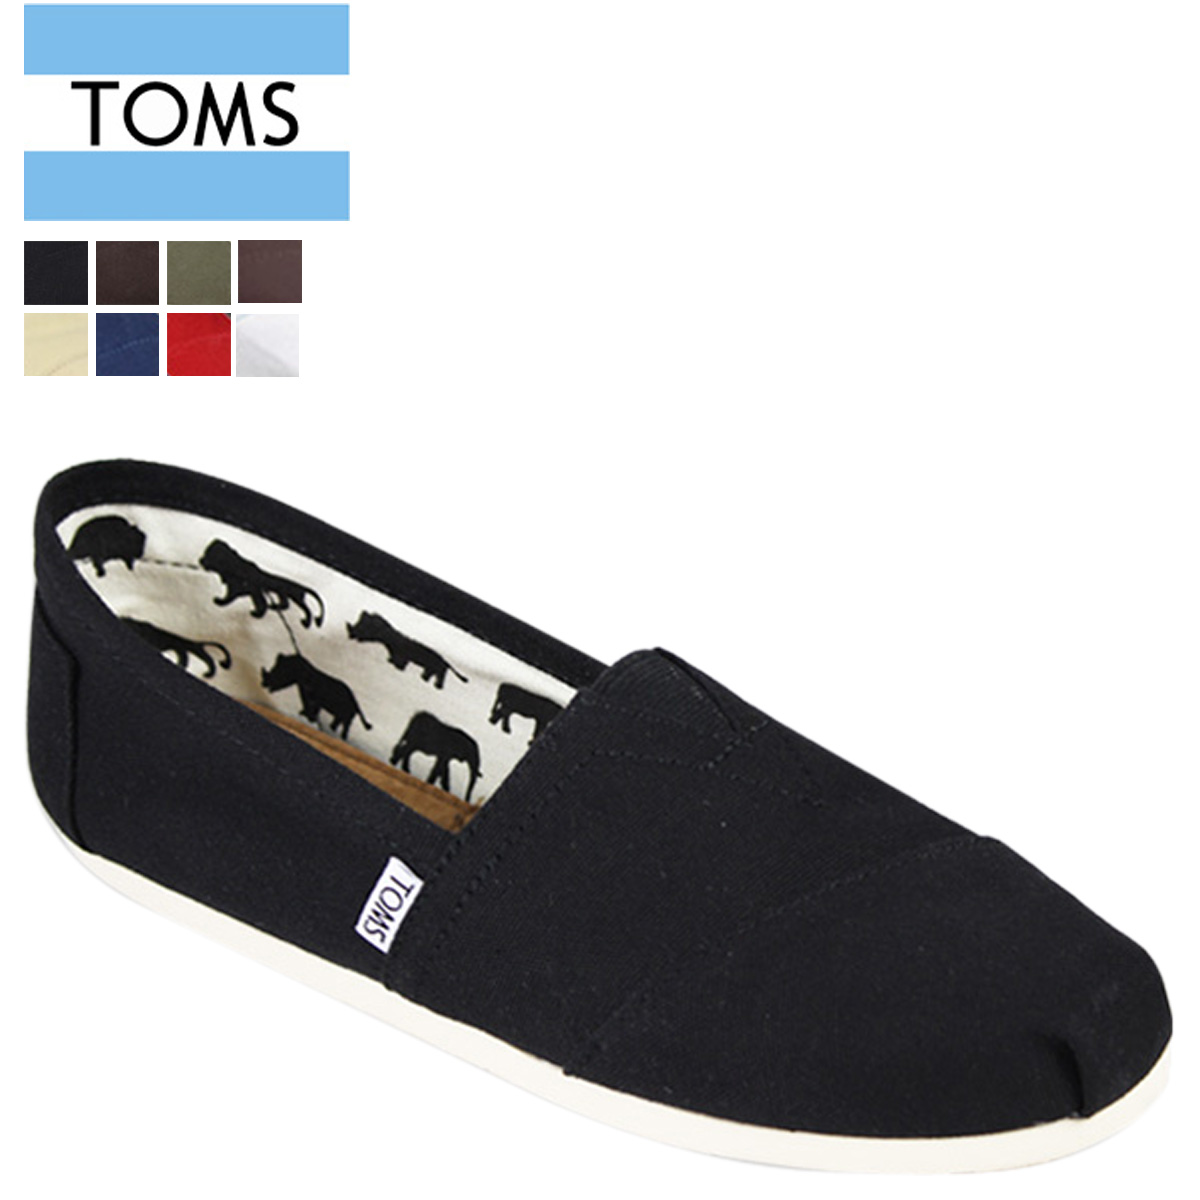 楽天市場 訳あり Toms Shoes Canvas Mens Classics トムズシューズ スリッポン メンズ レッド a 返品不可 Goods Lab